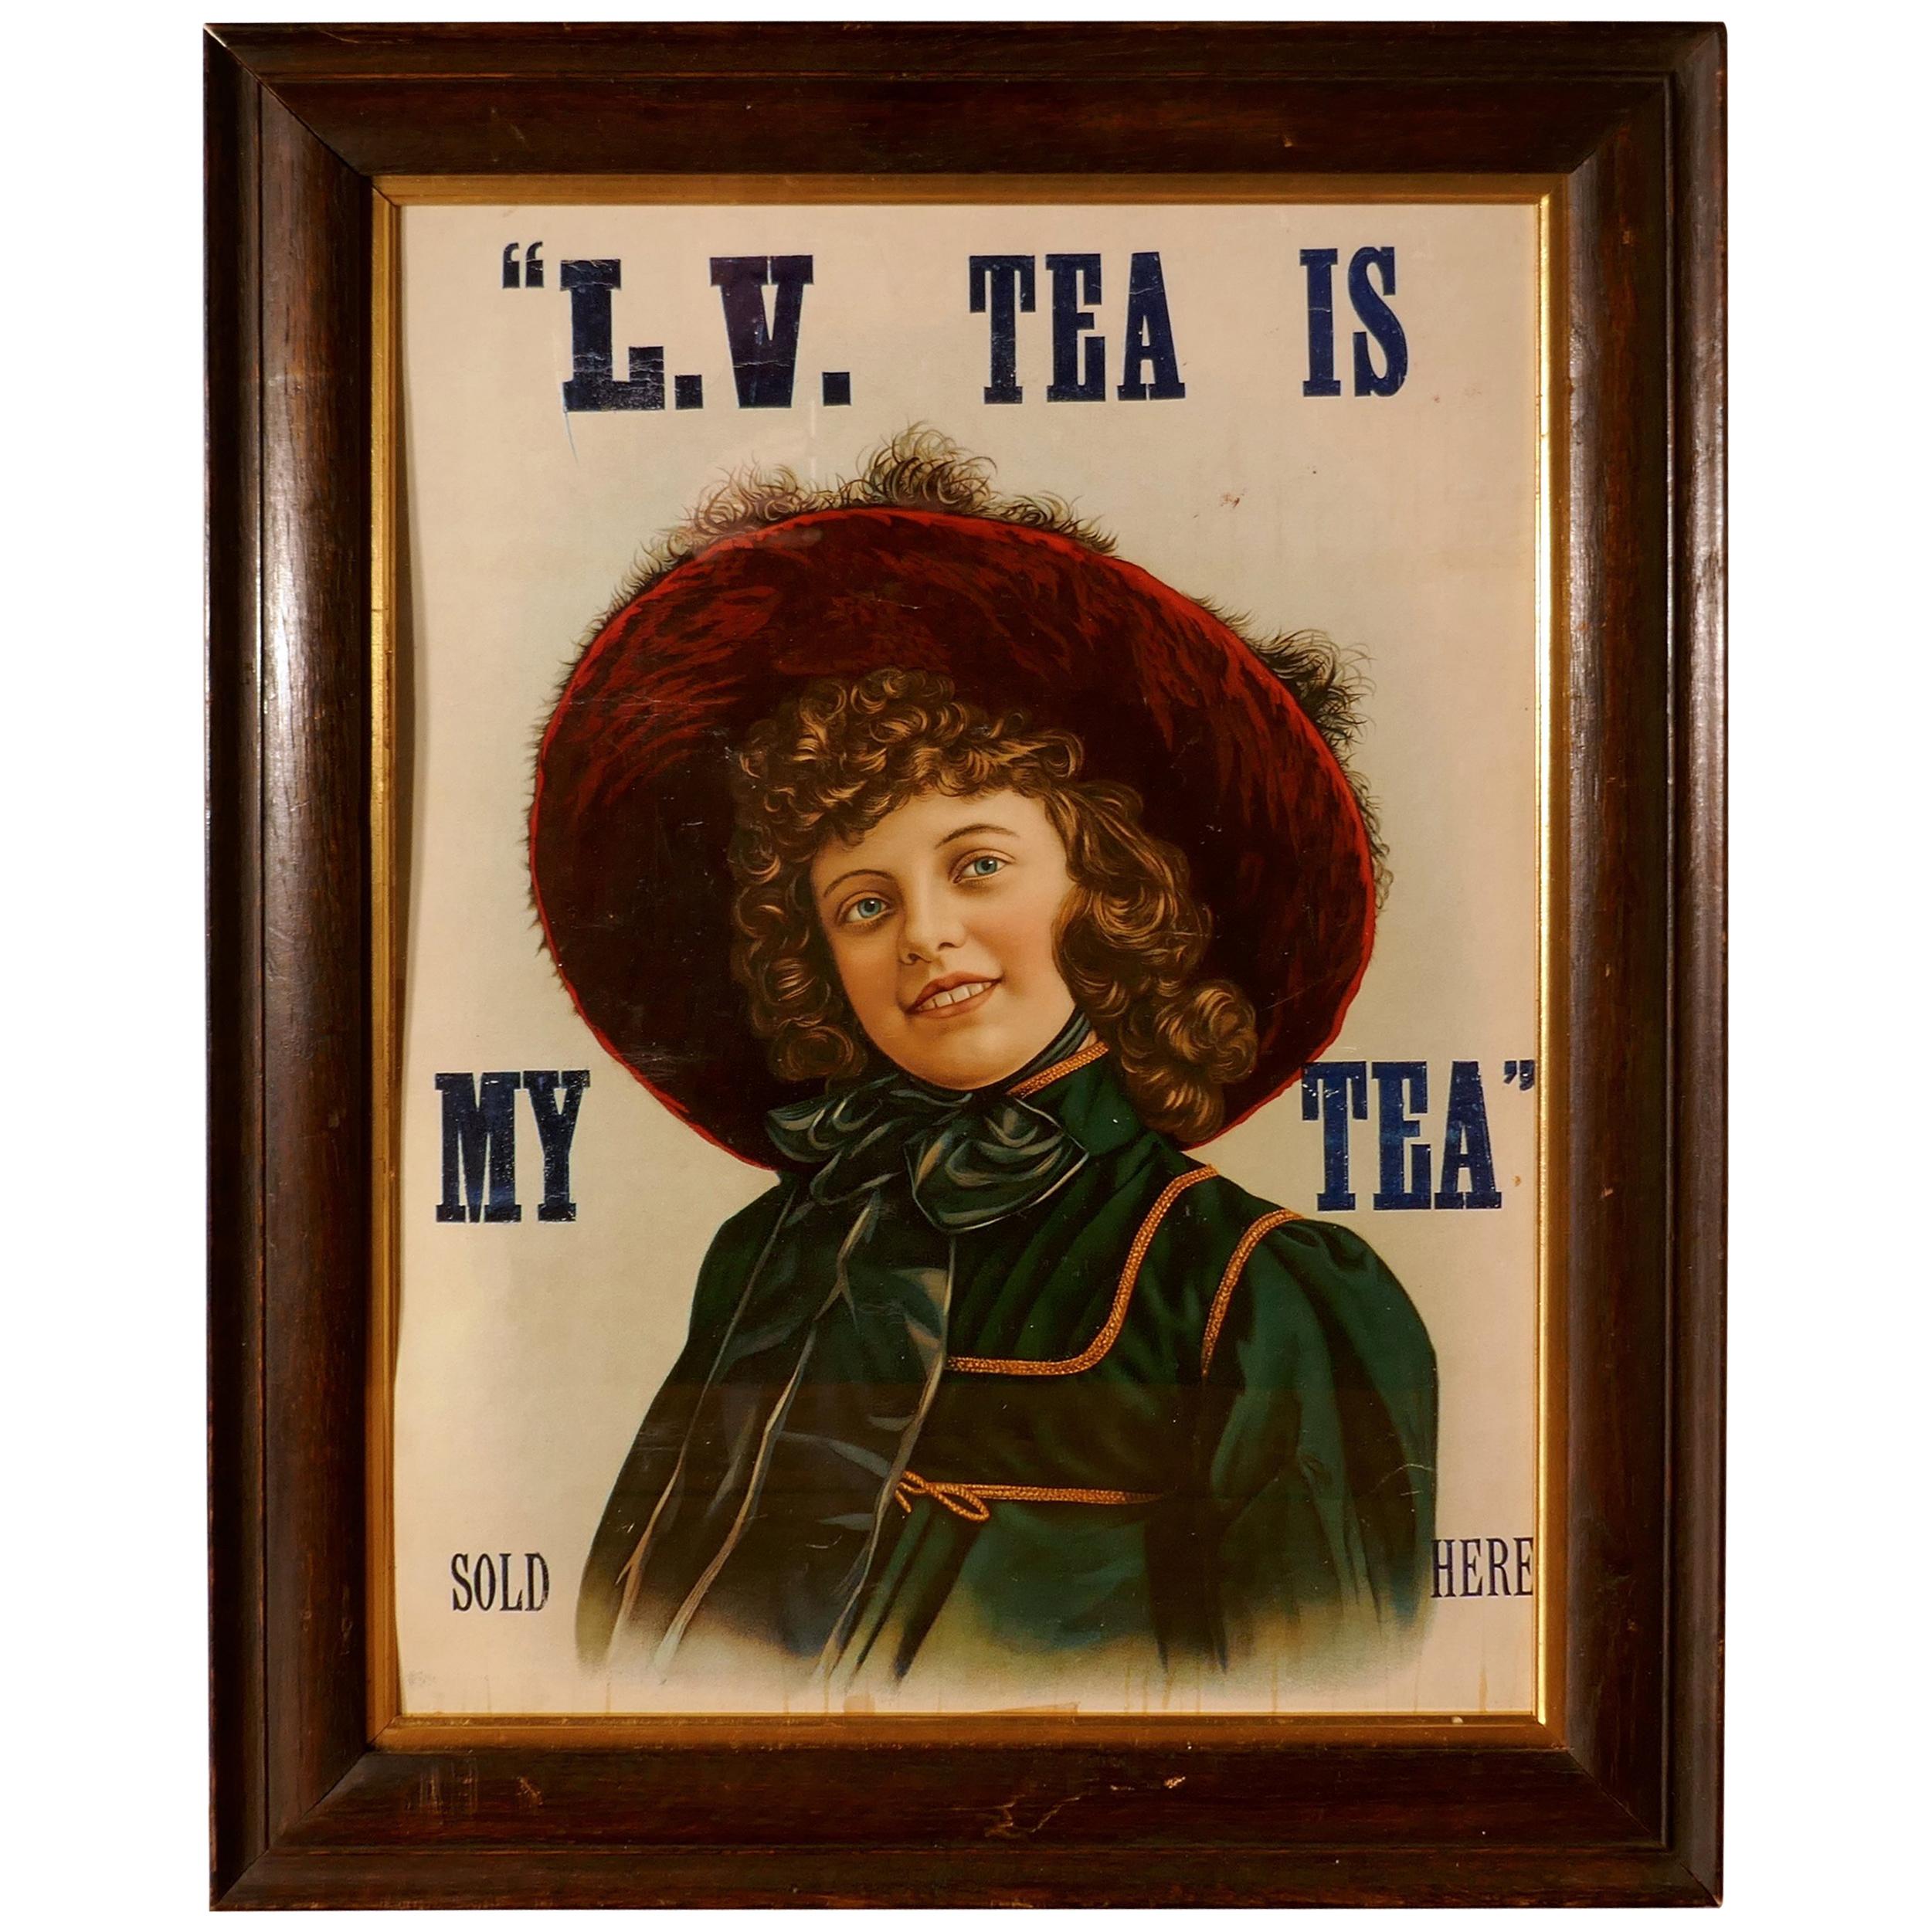 Affiche publicitaire édouardienne originale encadrée sur le thé, L.V. TEA IS MY TEA Vendu en vente